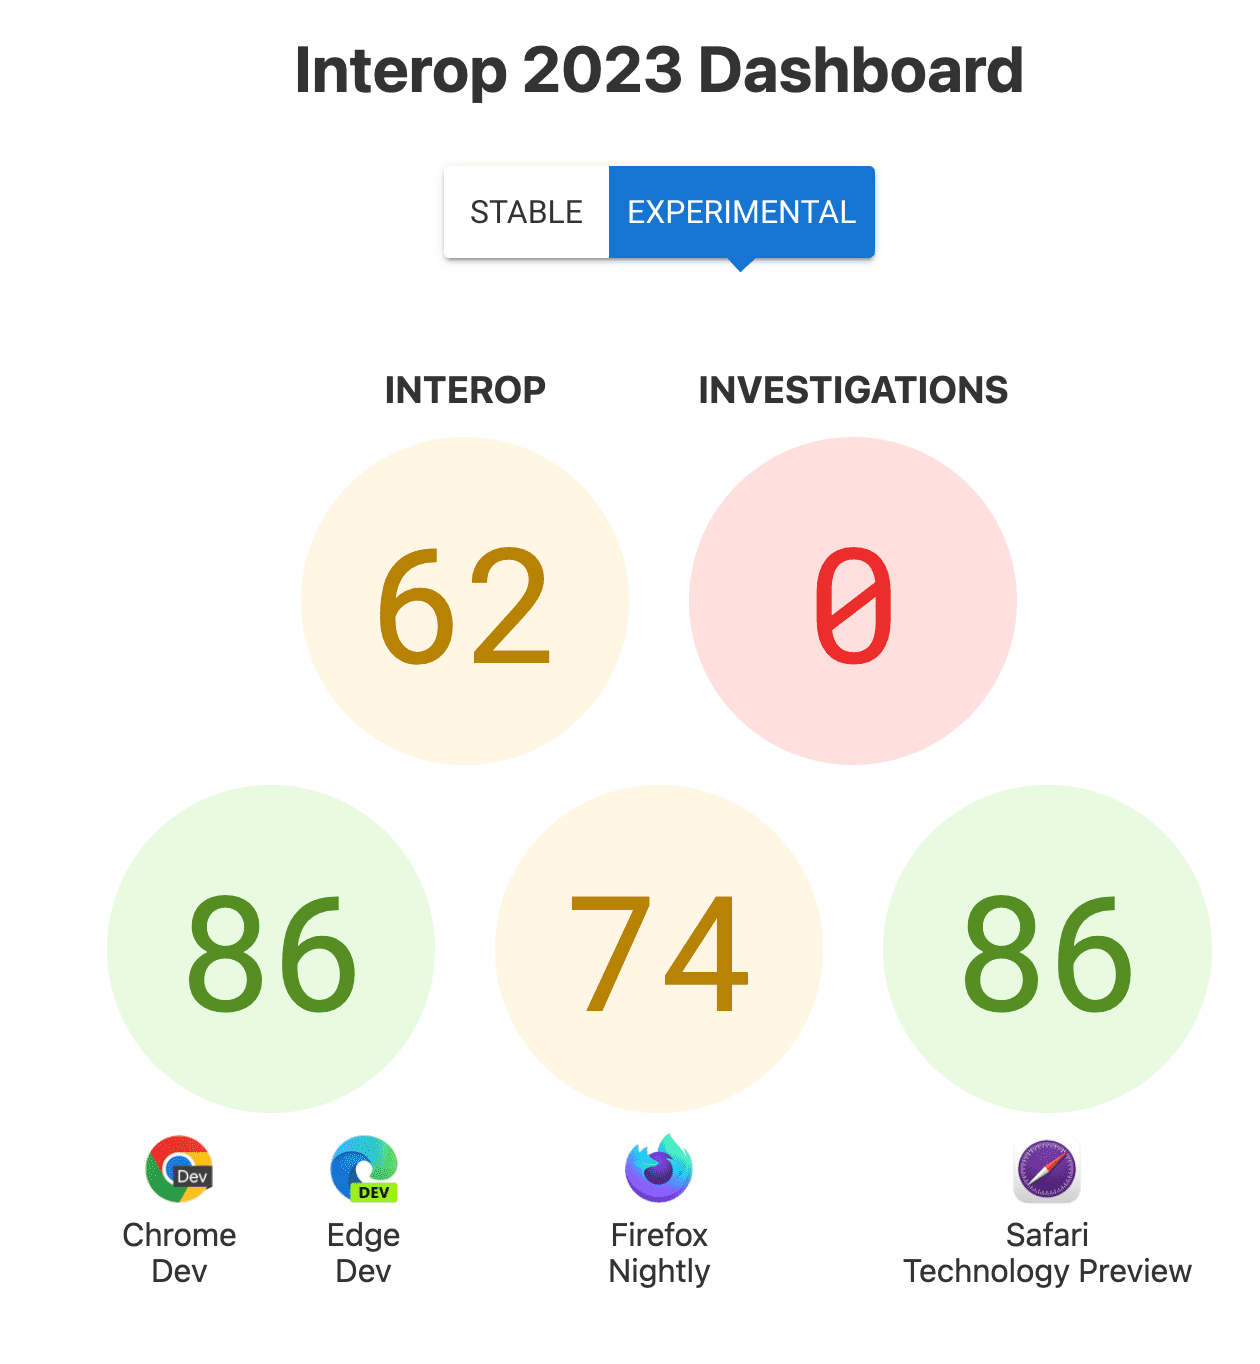 Pontuações gerais para Interop: 62, Investigações: 0 e pontuações por navegador - 86 para Chrome e Edge, 74 para Firefox, 86 para Safari Technology Preview.